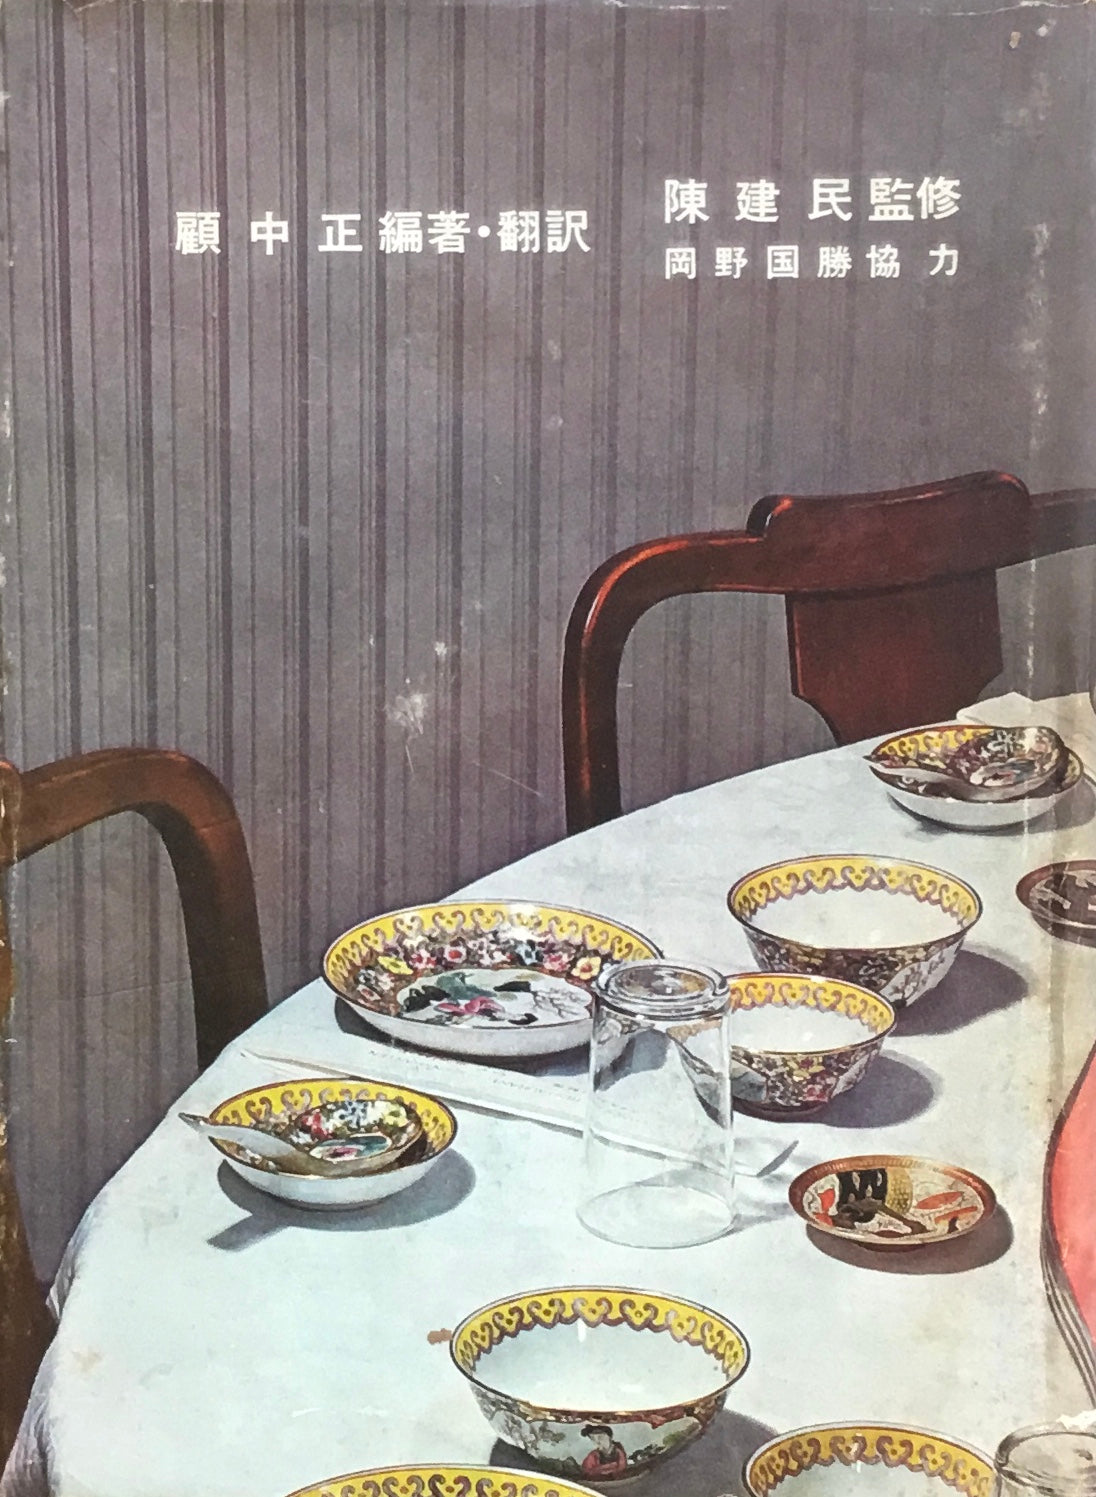 中国料理百科理論 名菜譜抜萃600選 – smokebooks shop